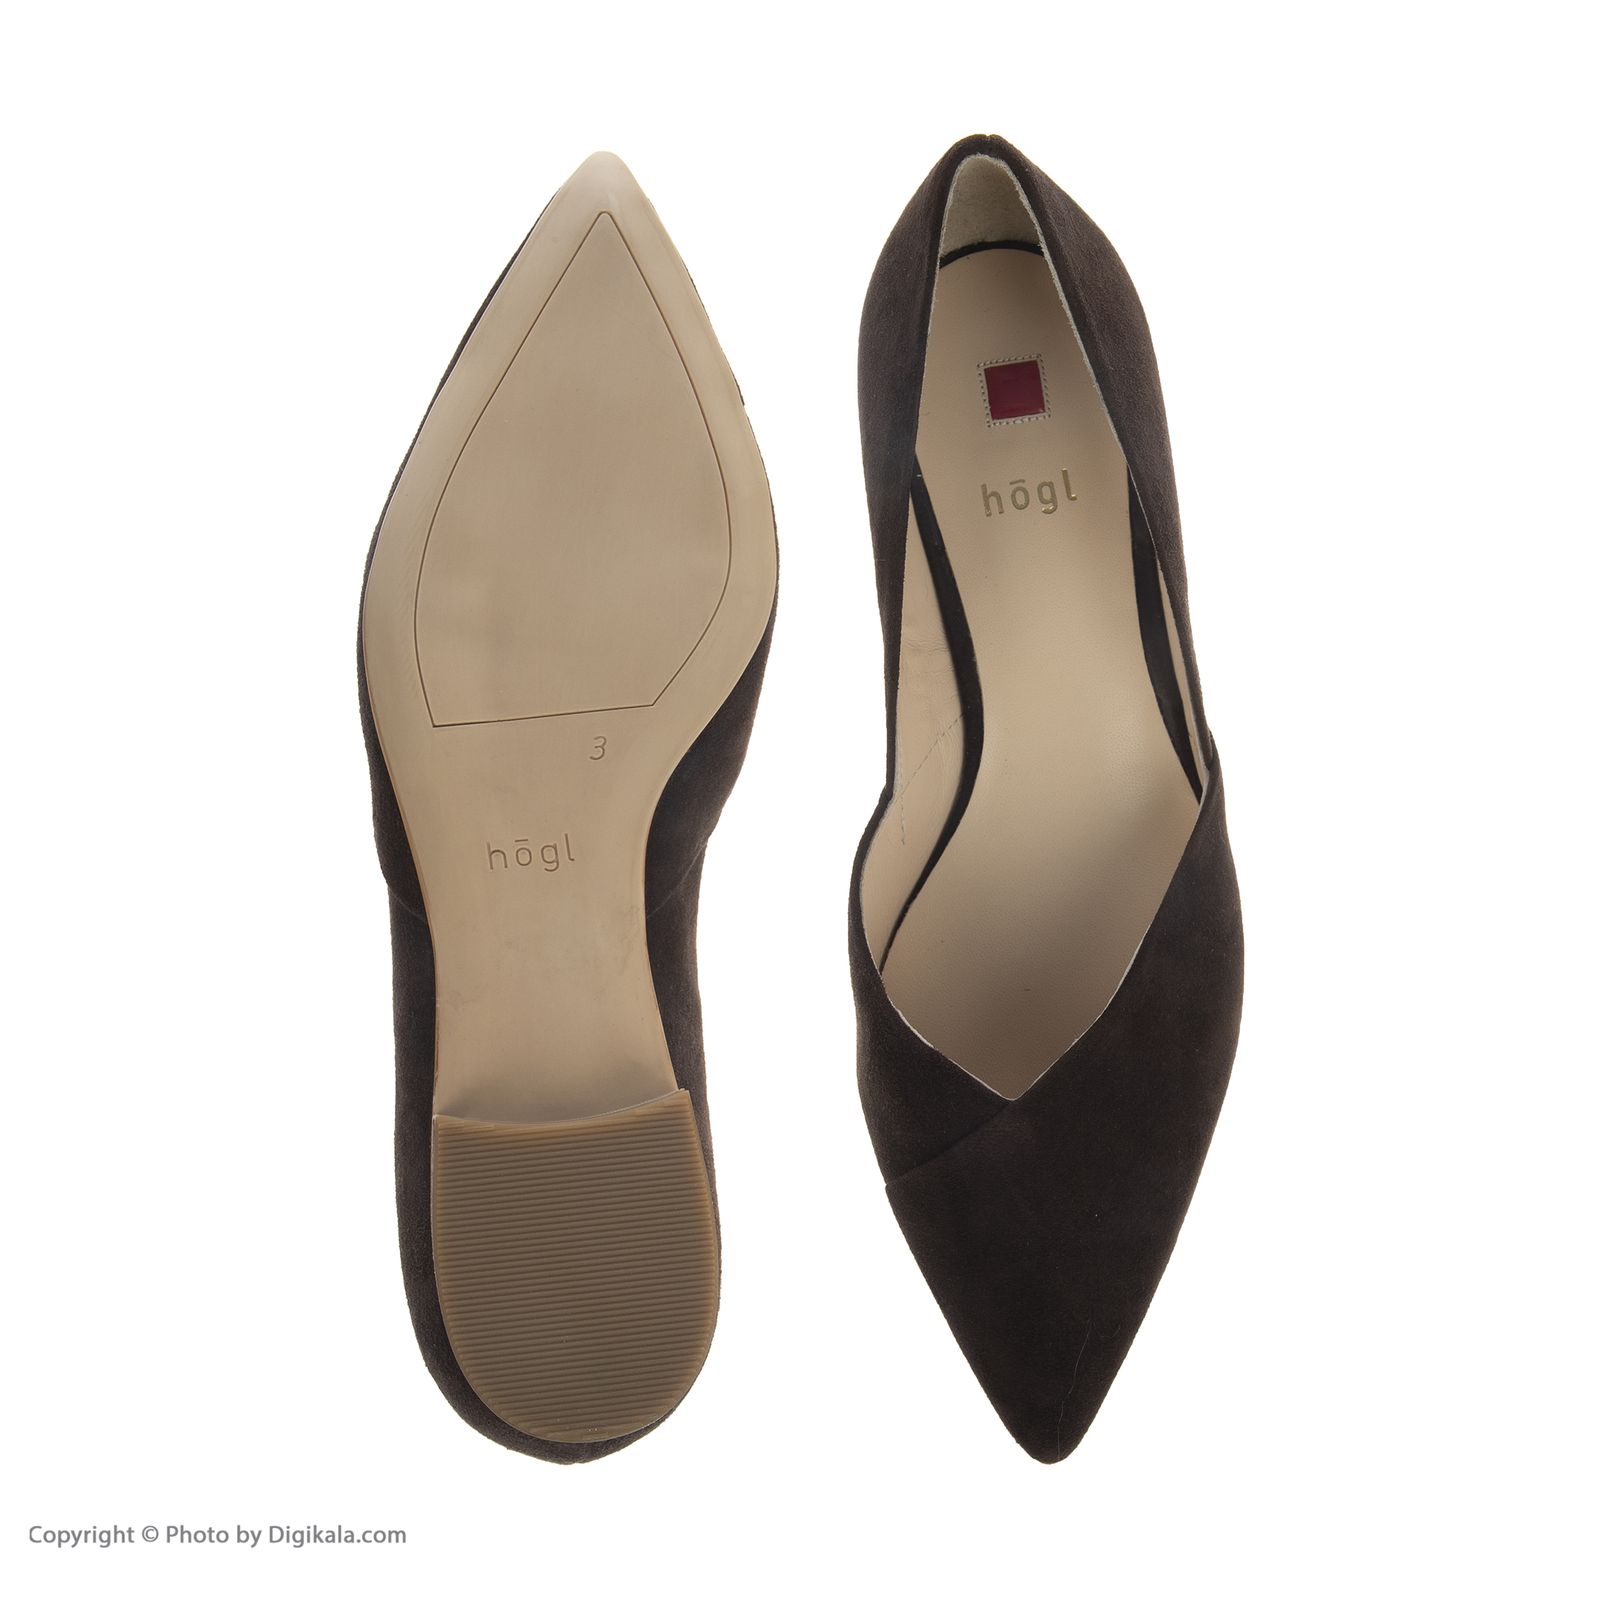 کفش زنانه هوگل مدل 3-102012-2200 - قهوه ای تیره - 4